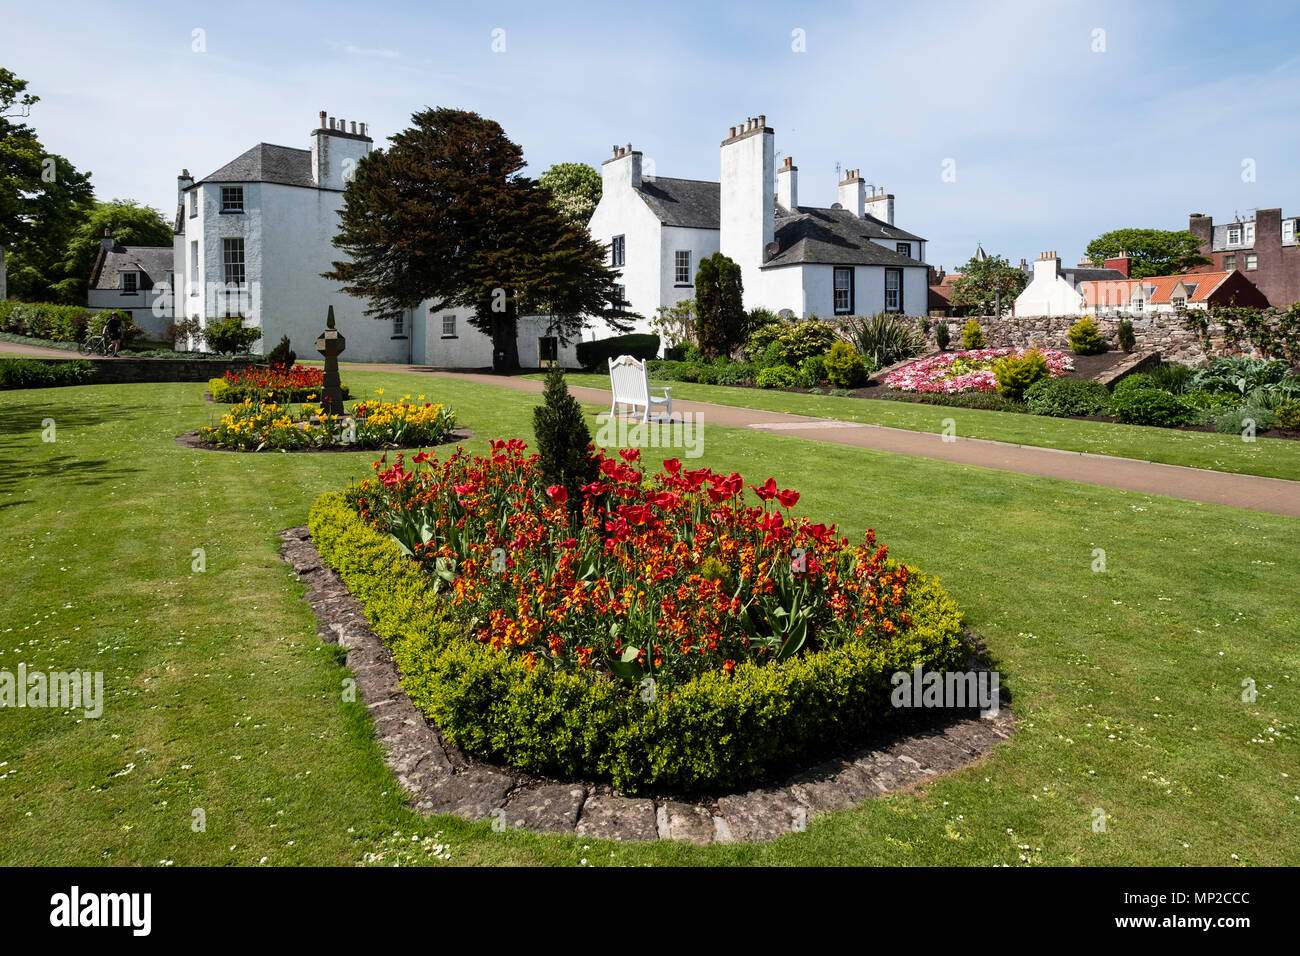 Blick auf die Gärten an der North Berwick Lodge, in East Lothian, Schottland, Vereinigtes Königreich, Großbritannien Stockfoto